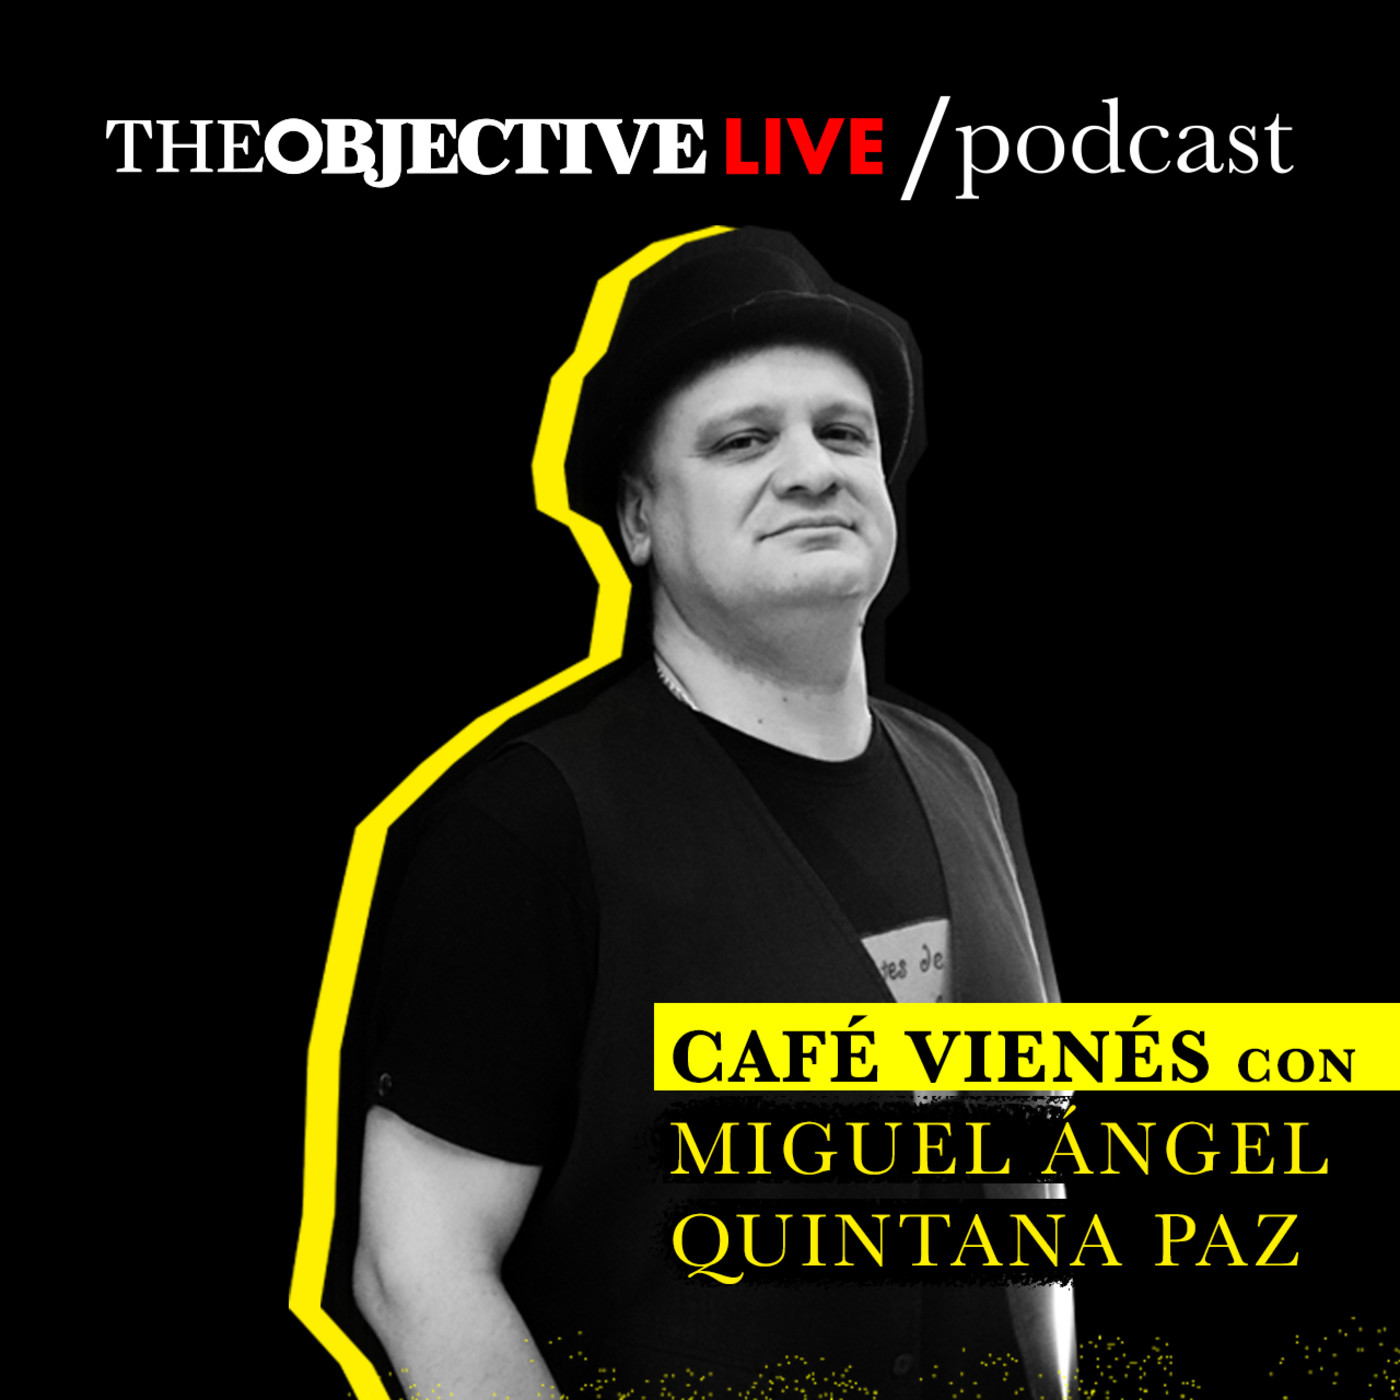 Café vienés con Juan Carlos Girauta